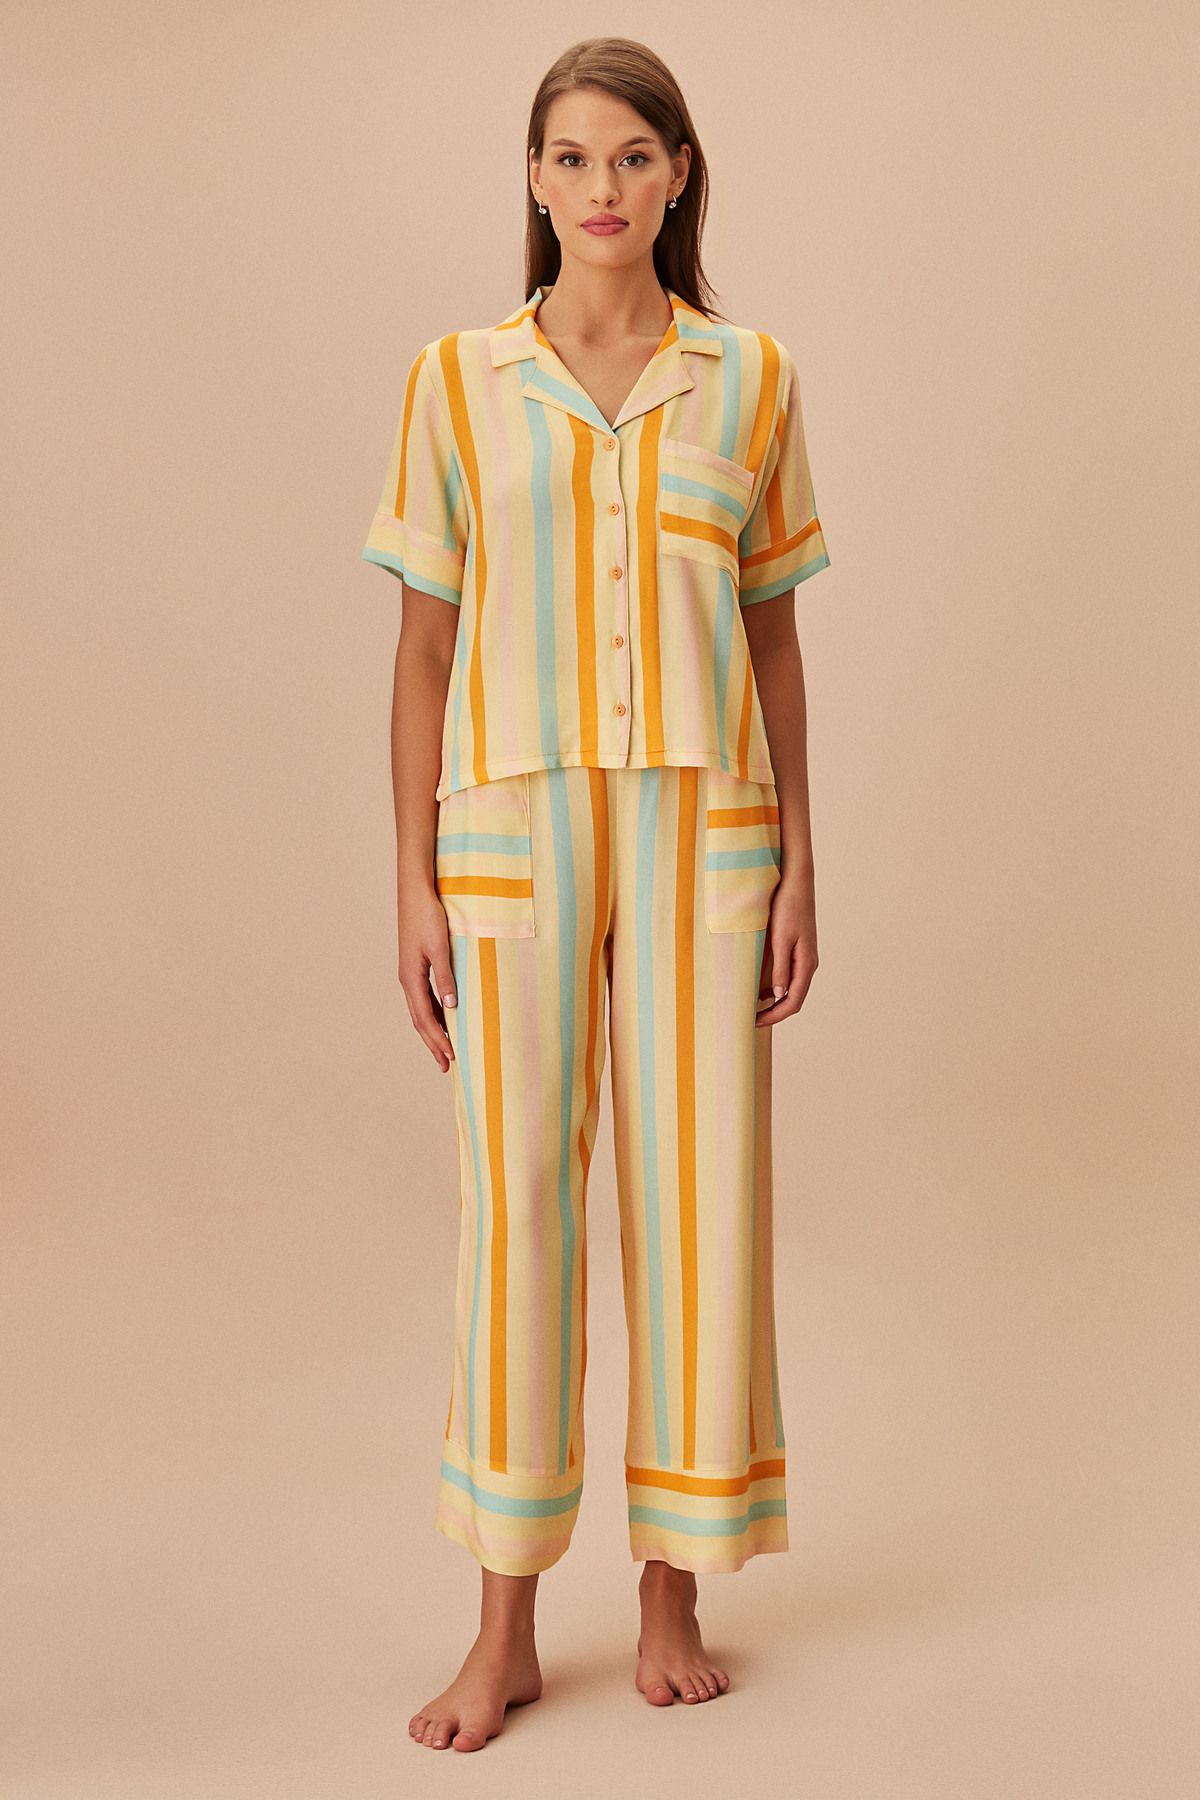 Suwen Linepot Maskülen Pijama Takımı